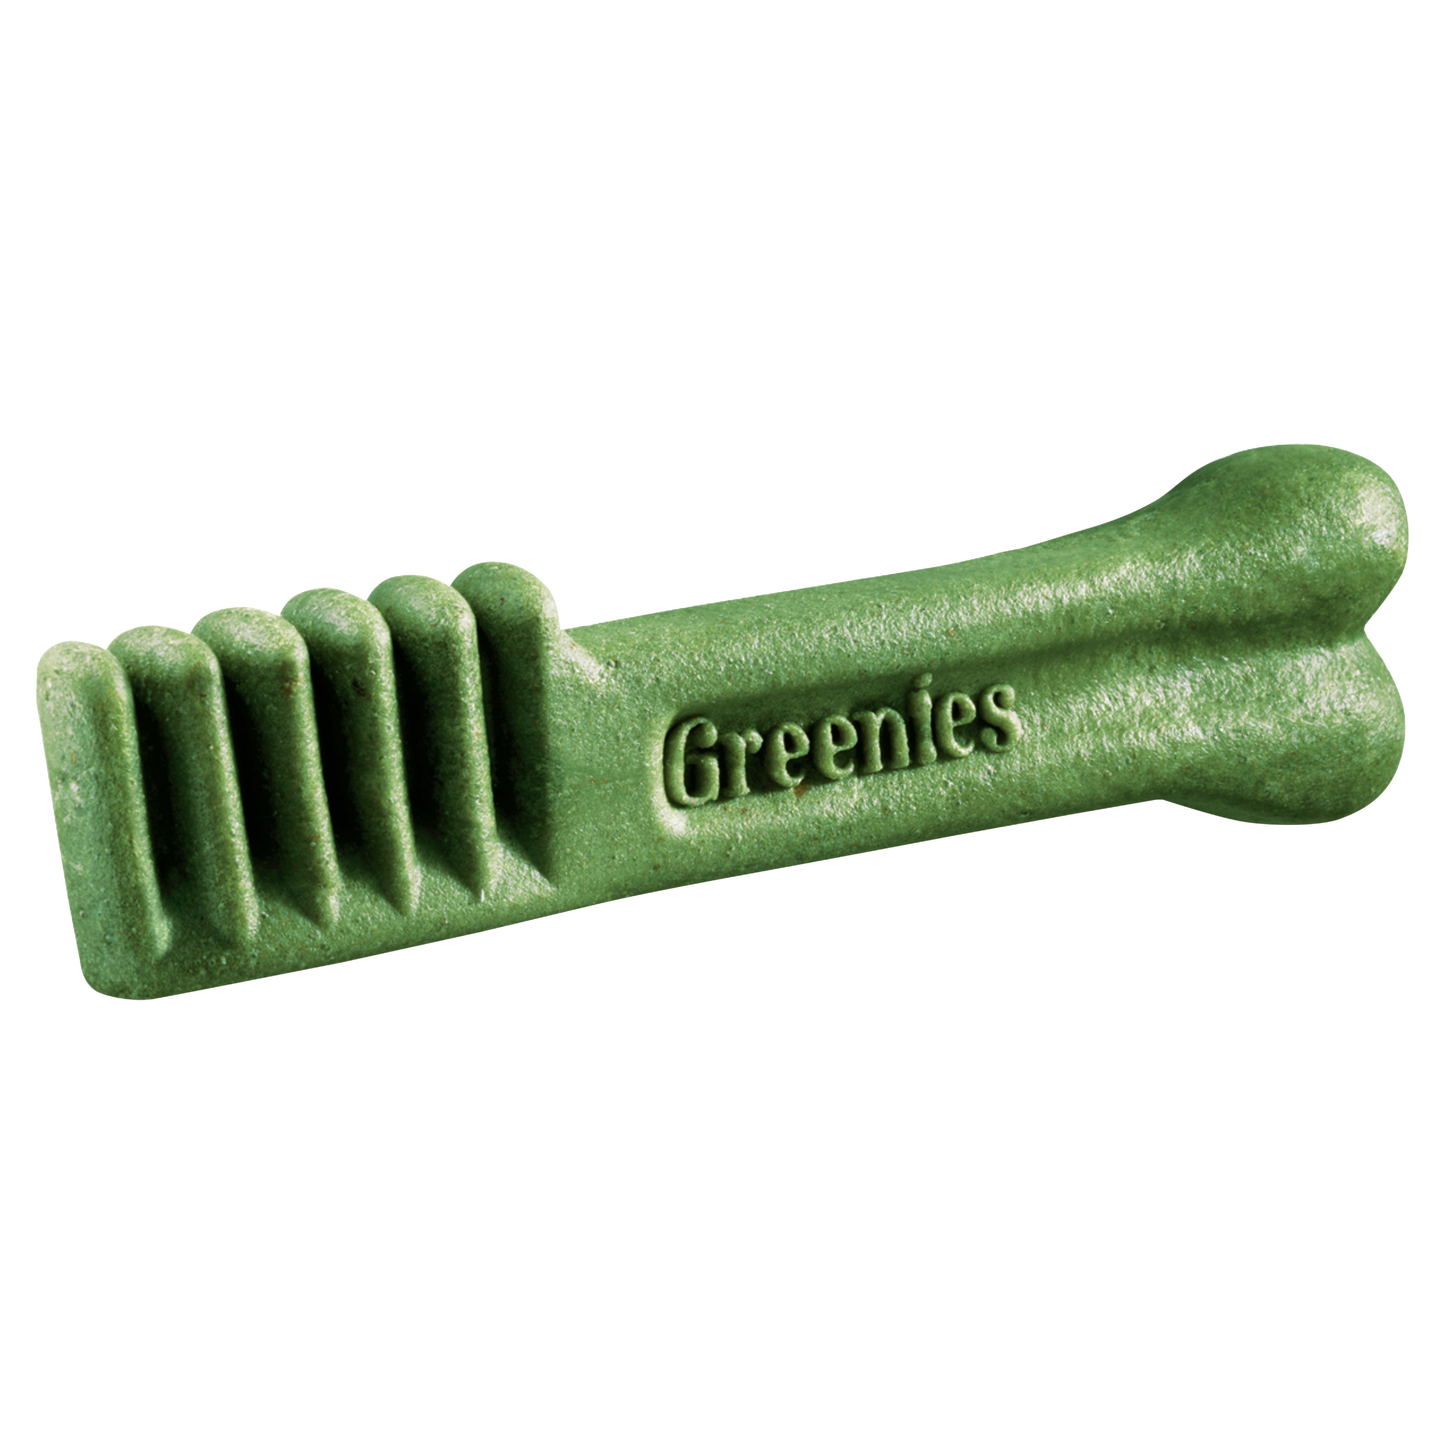 GREENIES Original Dental Regular Dental Dog Treats 12 pack